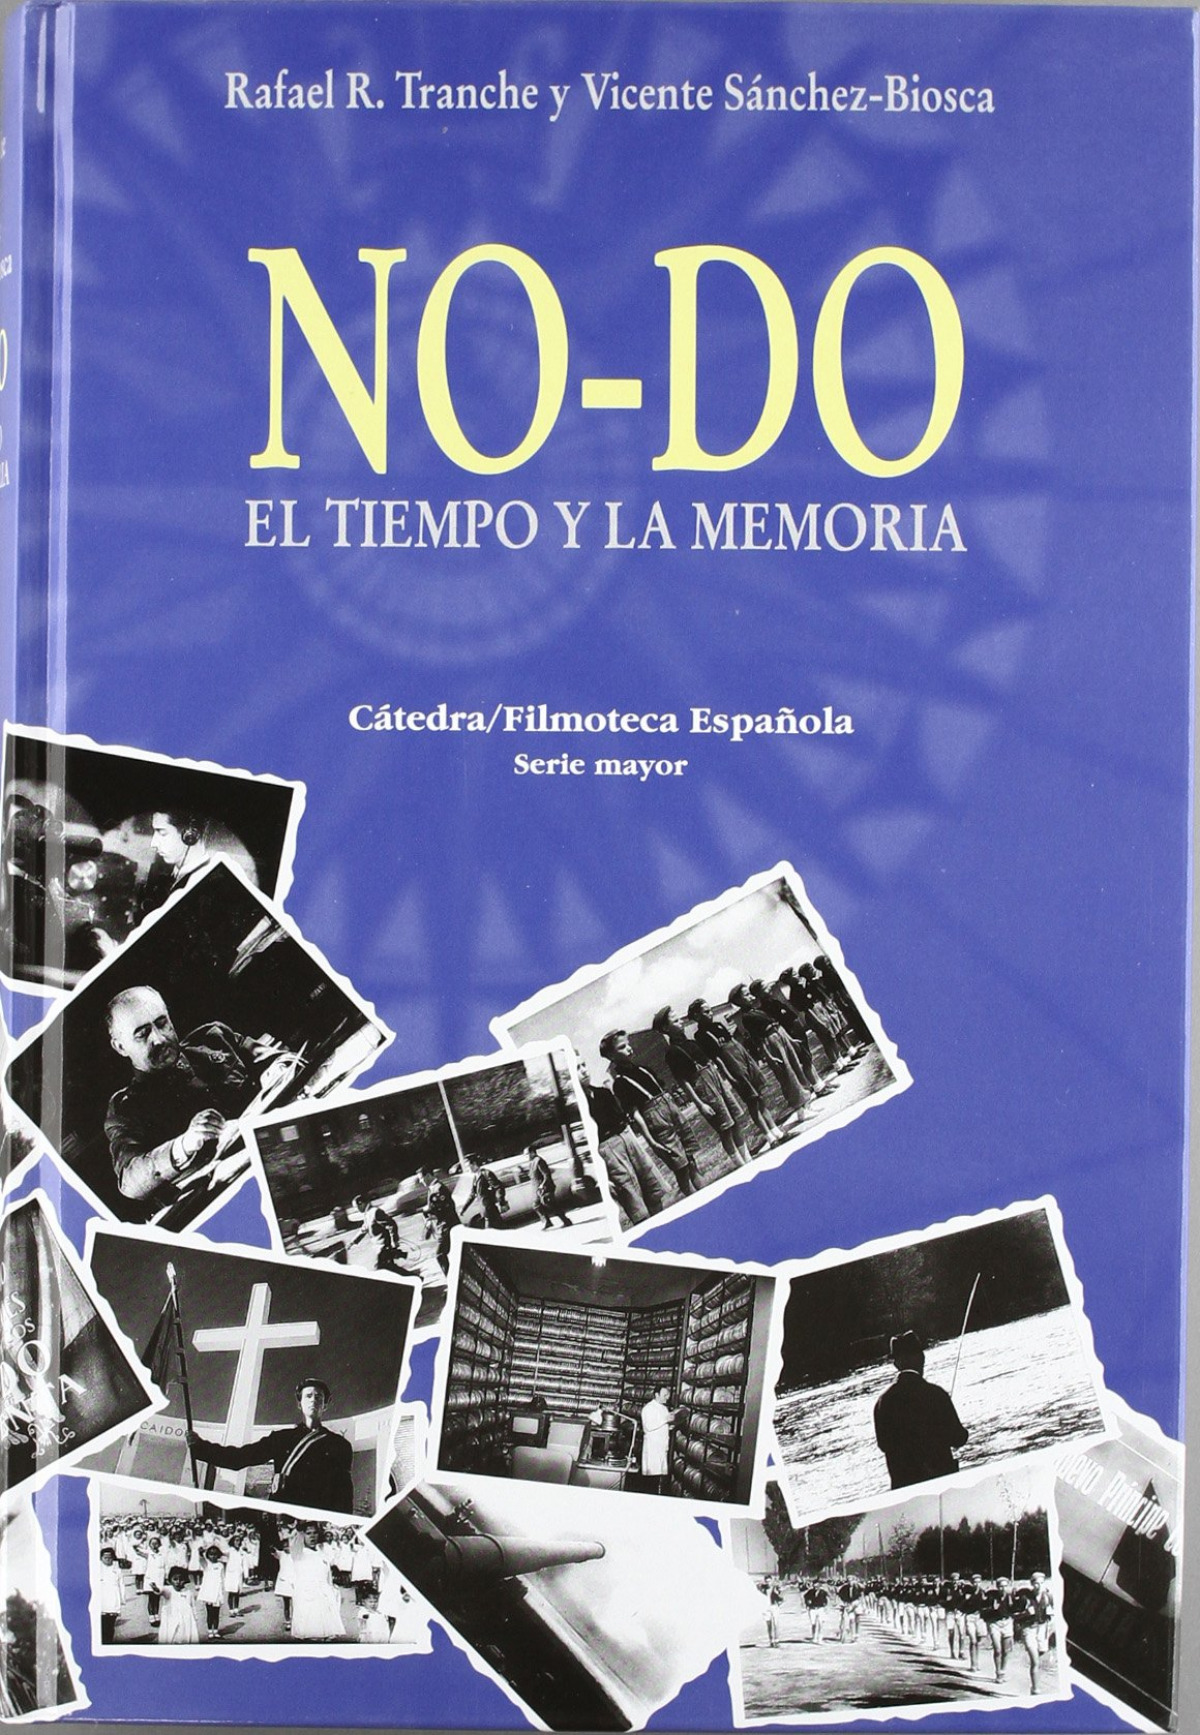 NO-DO. El tiempo y la memoria - Sánchez-Biosca, Vicente/Tranche, Rafael R.